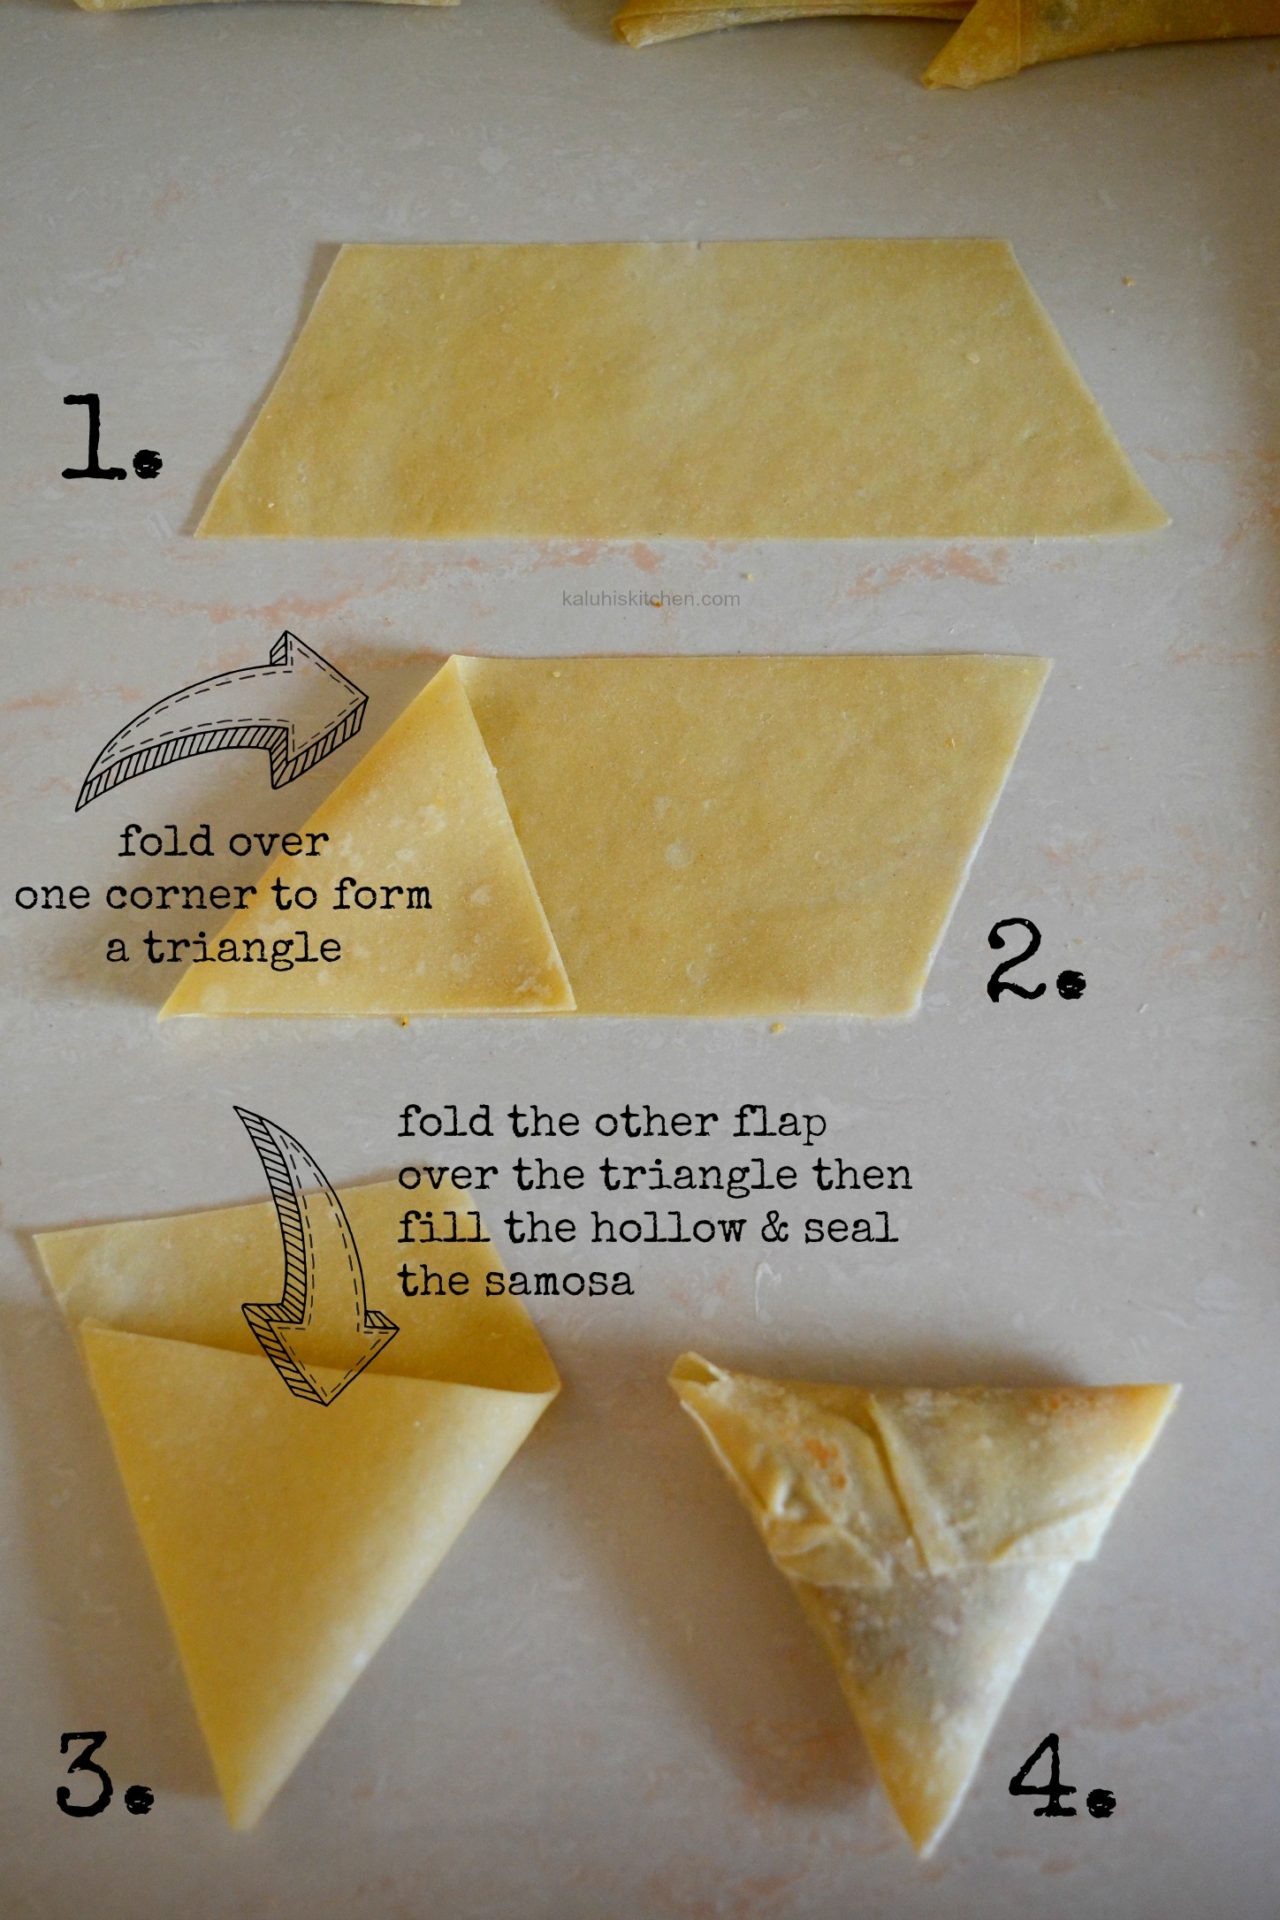 How to fold a samosa pastry_how to make a samosa_how to make samosas_kaluhiskitchen.com